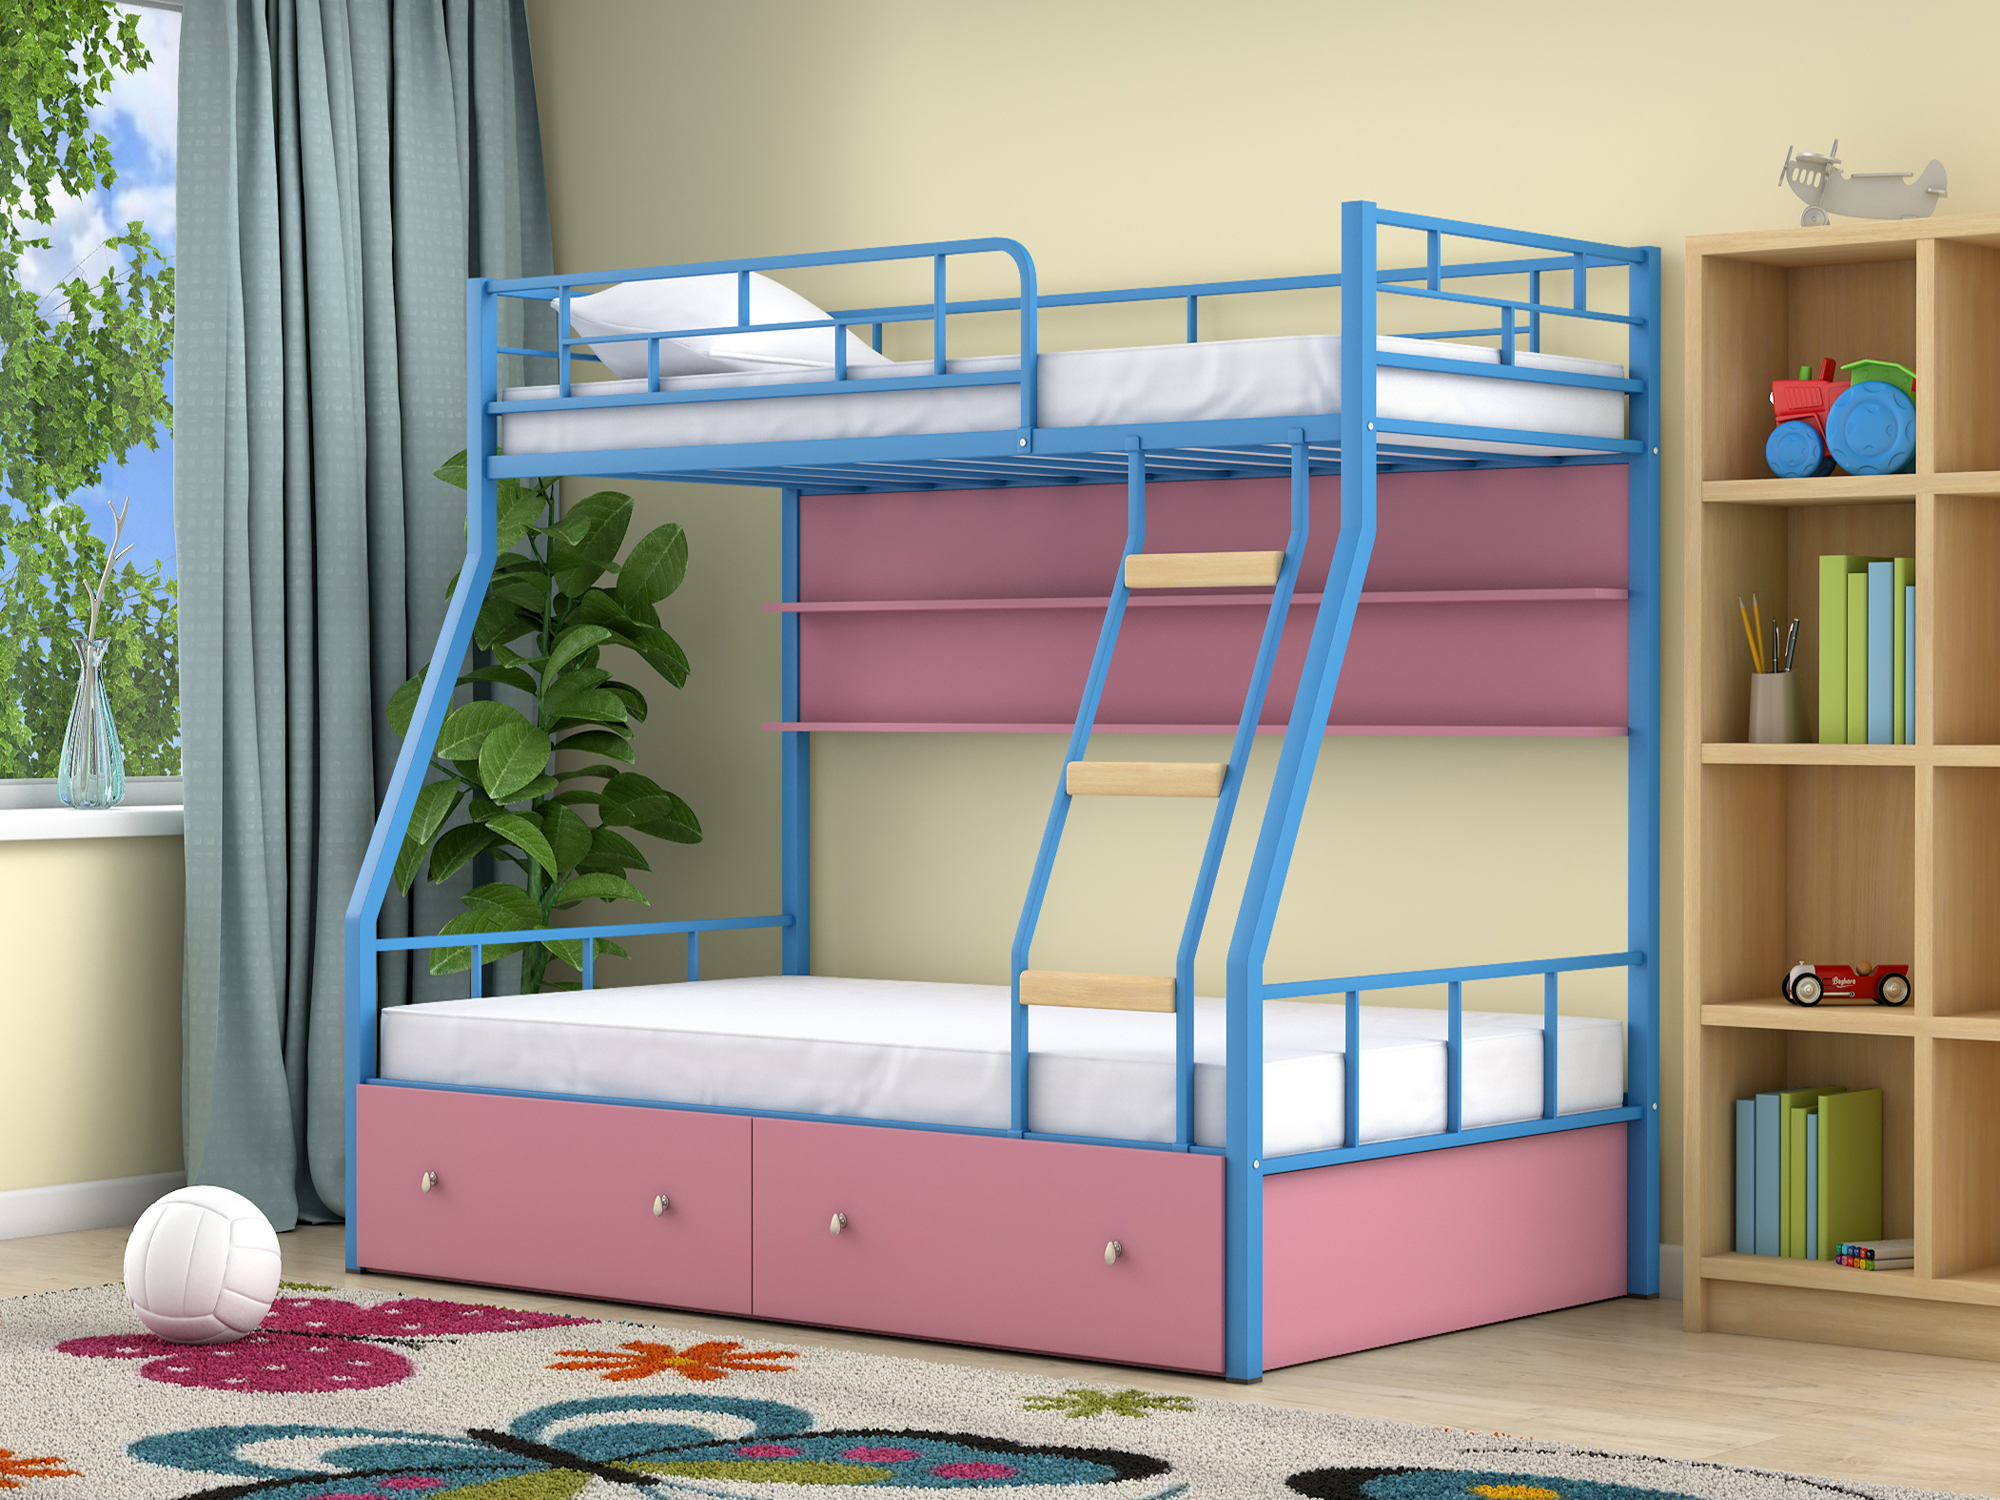 Двухъярусная кровать Радуга (90х190/120х190) Розовый, Голубой, ЛДСП, Металл цена и фото